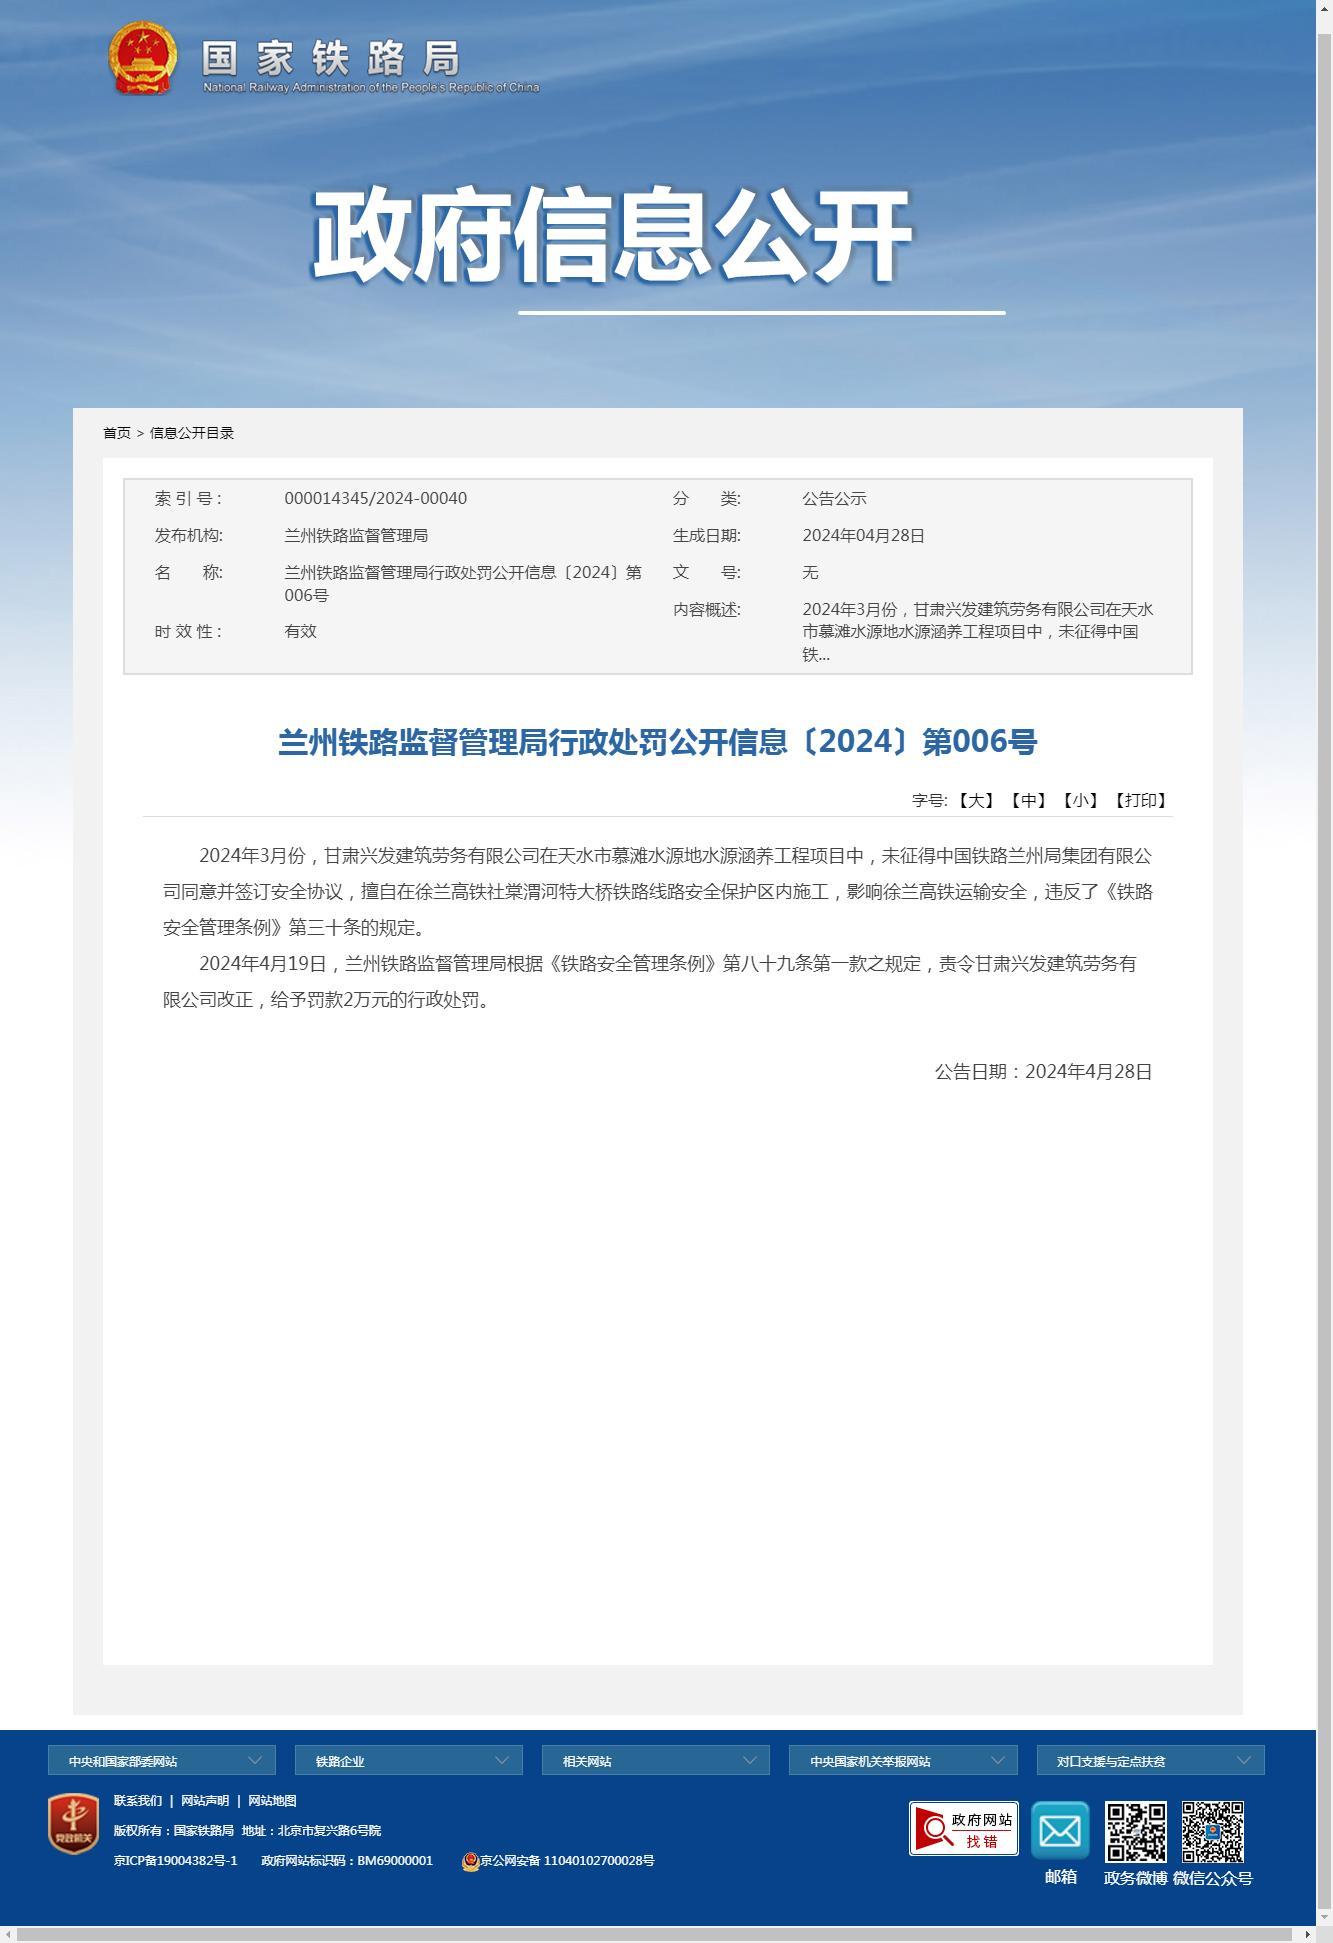 甘肃兴发建筑劳务有限公司因影响徐兰高铁运输安全被罚2万元